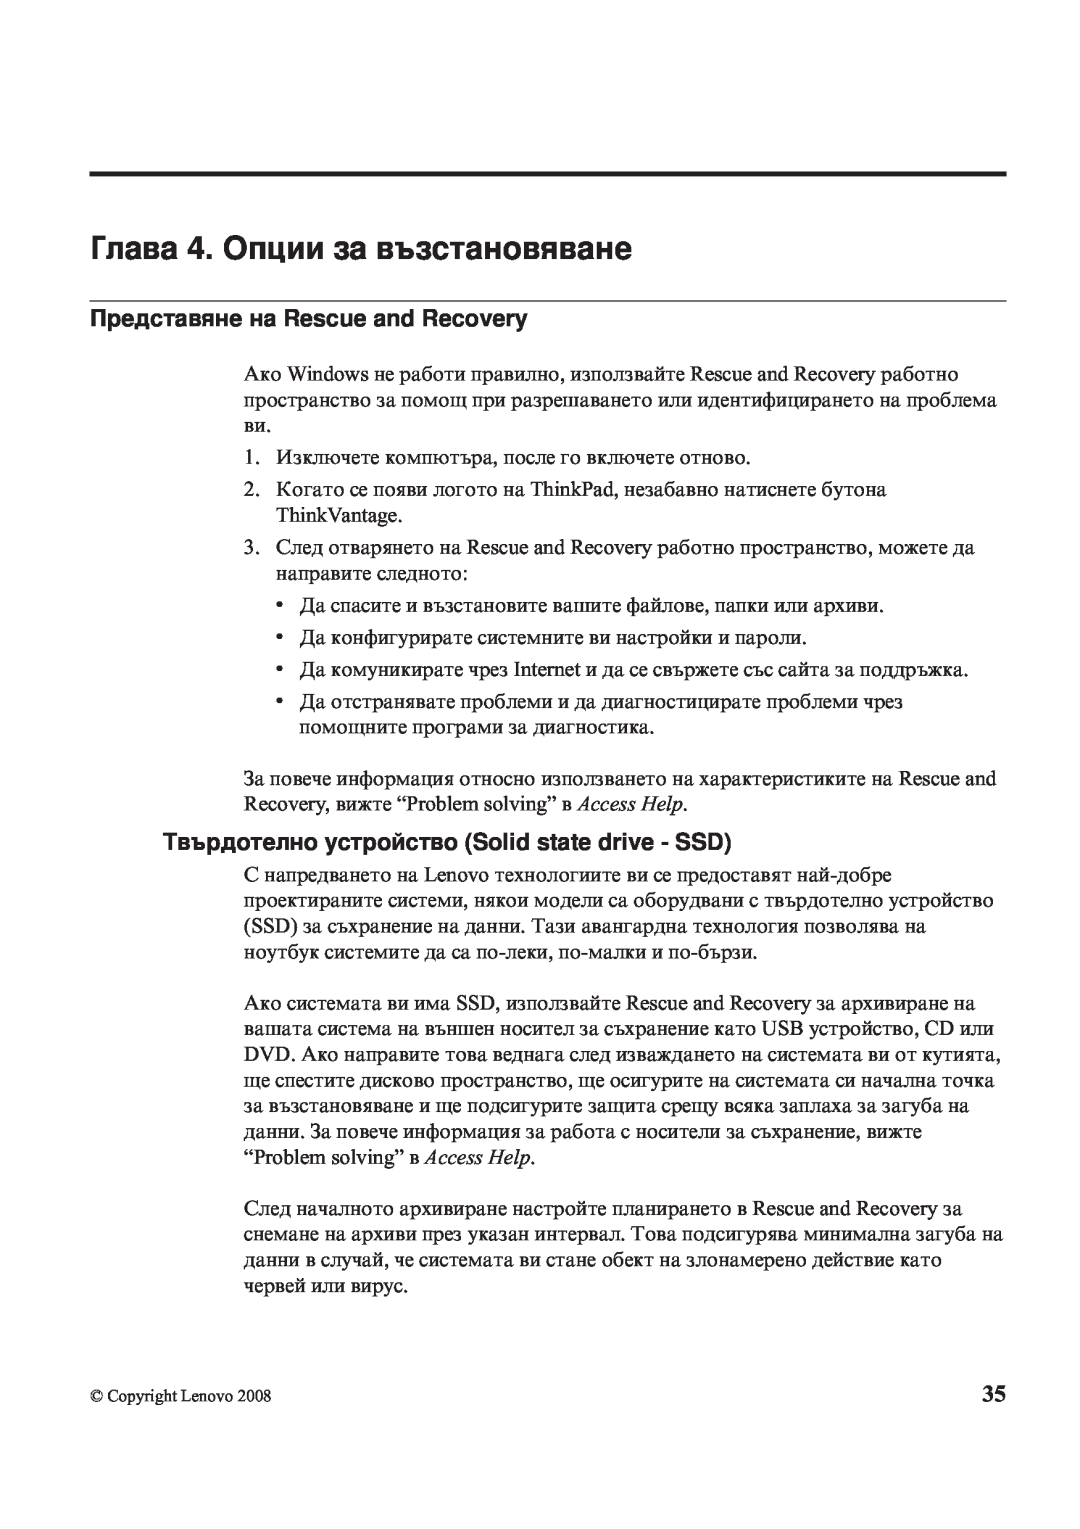 Lenovo X200 manual Глава 4. Опции за възстановяване, Представяне на Rescue and Recovery 